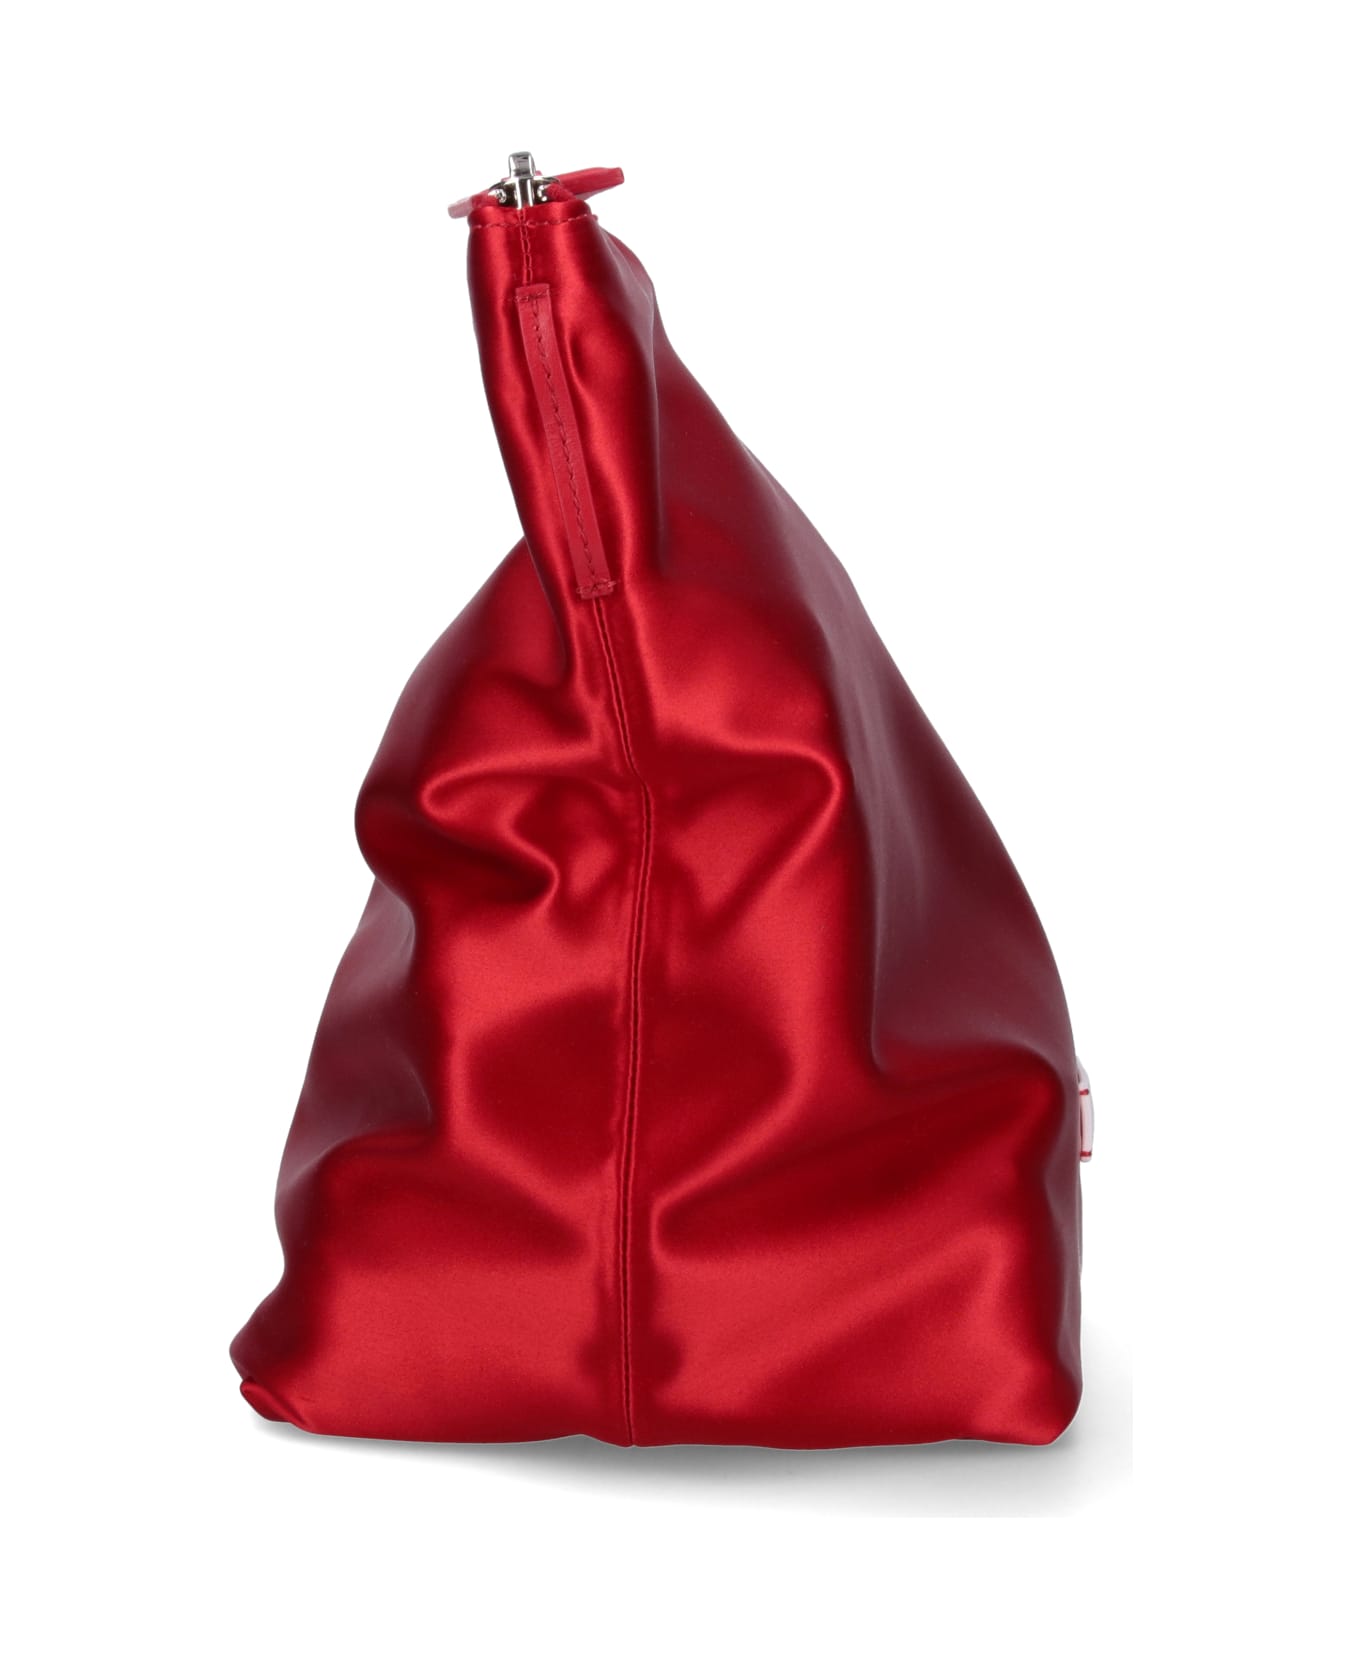 The Attico 'via Dei Giardini 30' Tote Bag - Vibrant Red